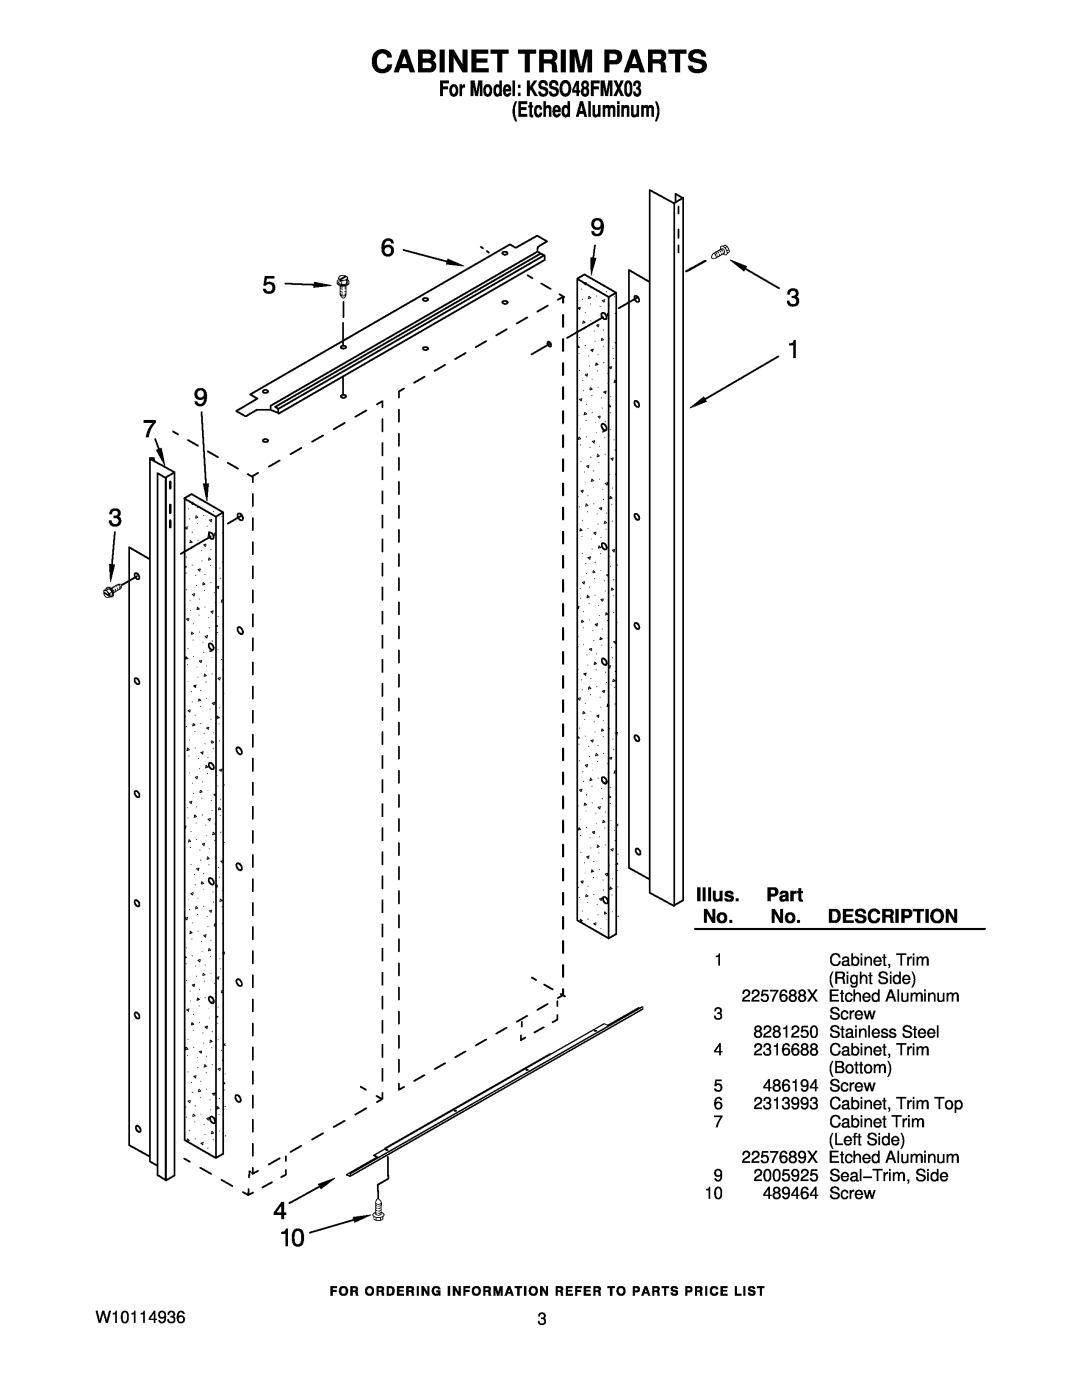 KitchenAid manual Cabinet Trim Parts, For Model KSSO48FMX03 Etched Aluminum, Illus, Description 